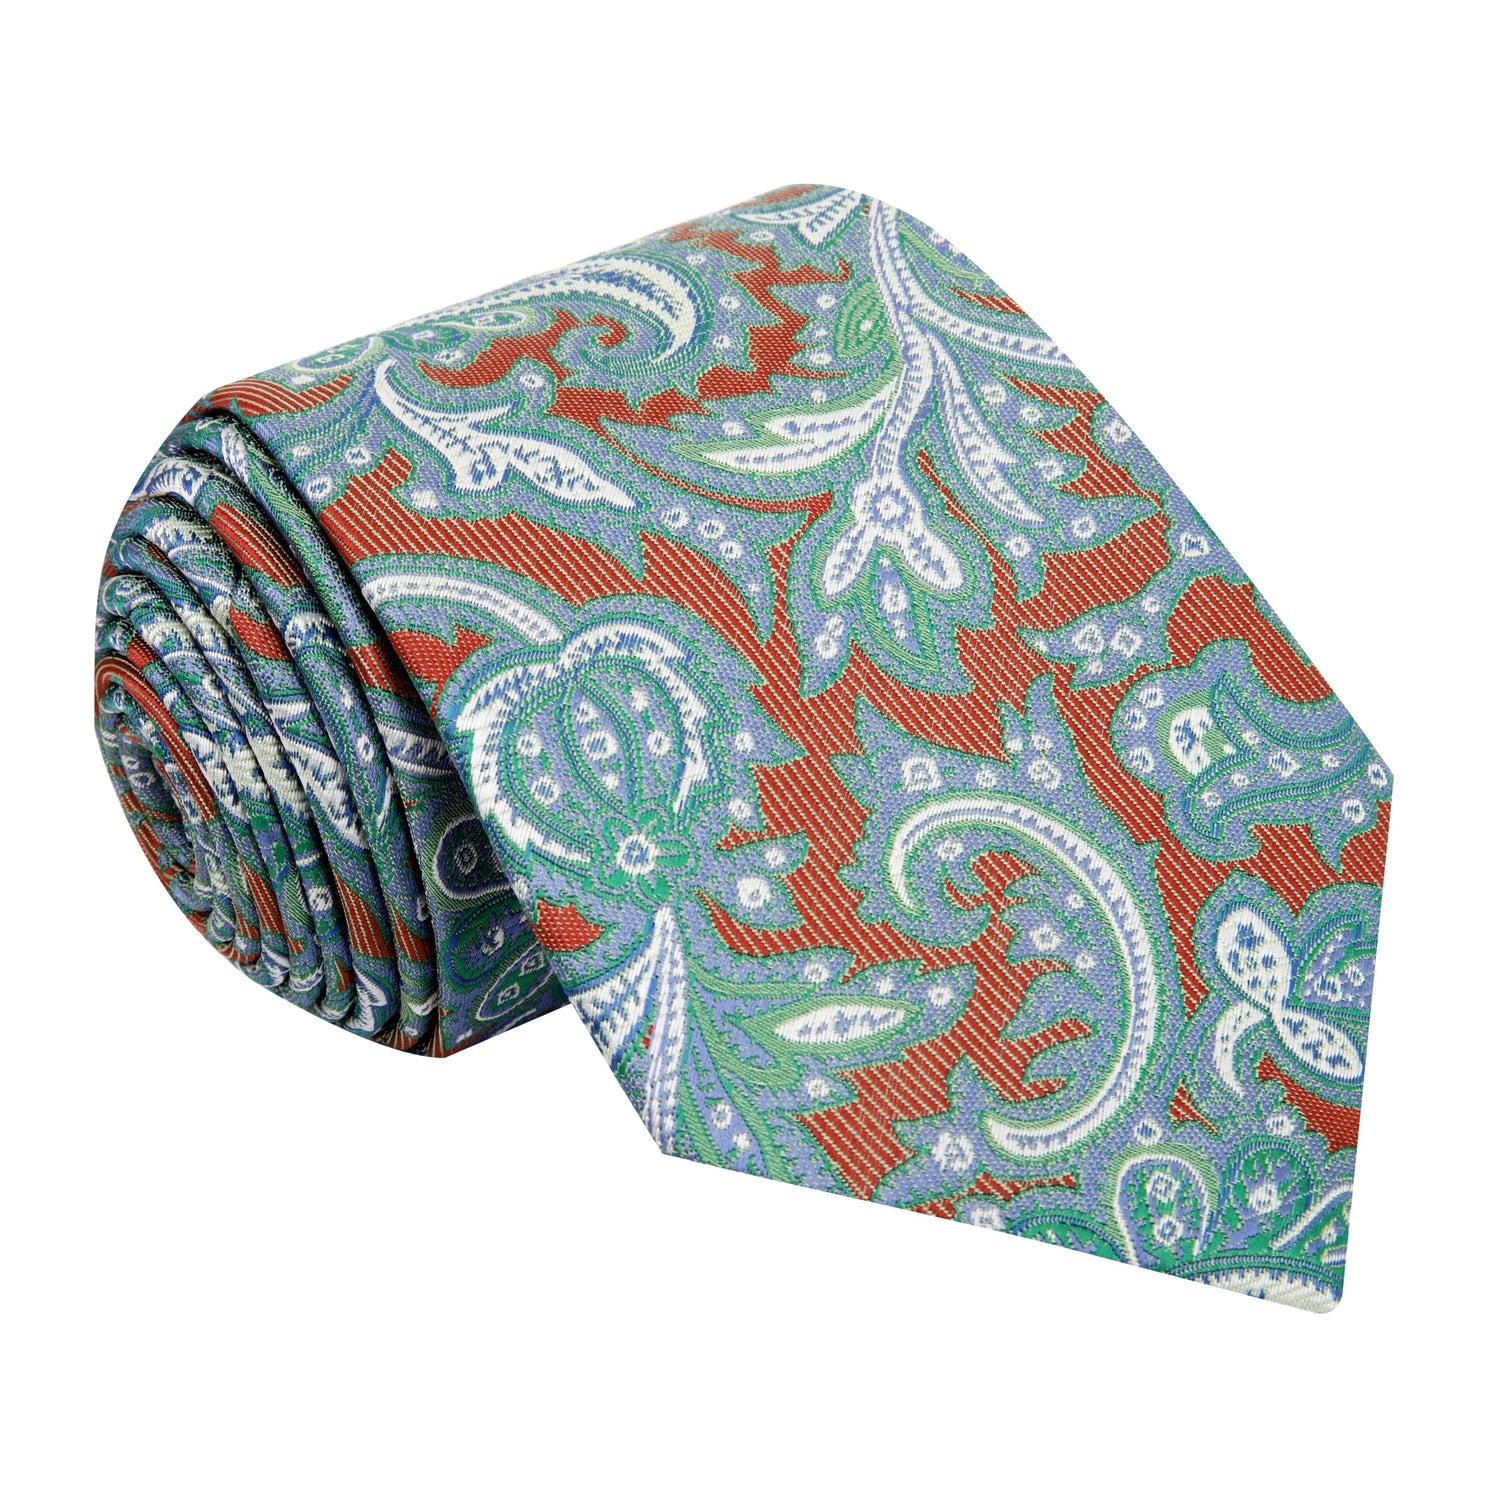 A Orange Intricate Paisley Silk Necktie